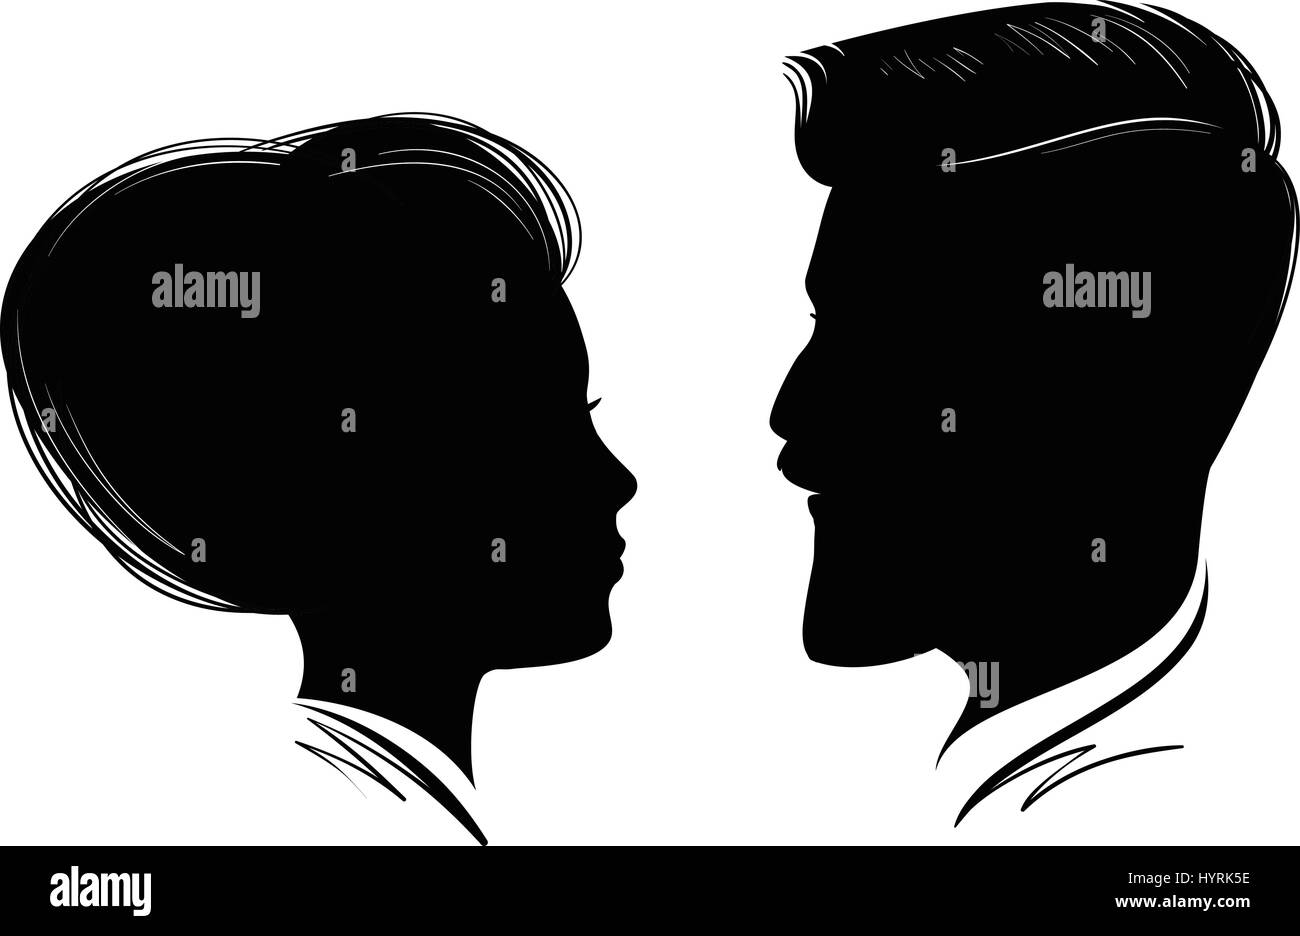 Porträt von Mann und Frau. Kopf-Profil, schwarze Silhouette. Hochzeit, Liebe, Menschen-Symbol. Vektor-illustration Stock Vektor